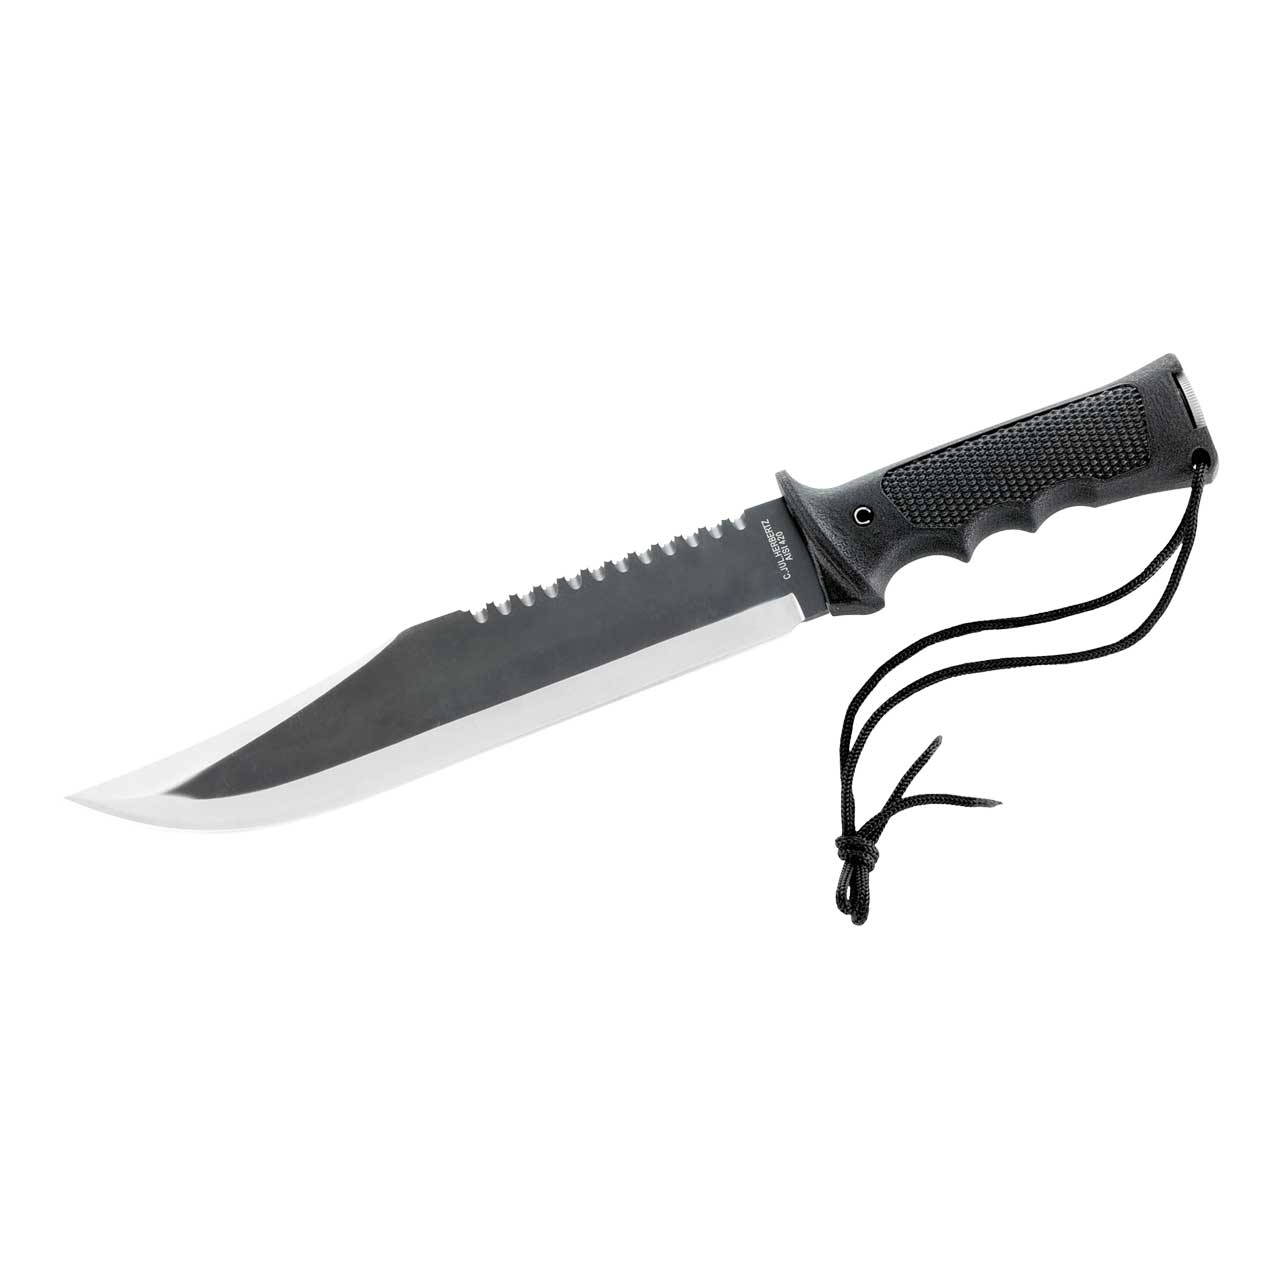 Herbertz Survival-Knife, Stahl AISI 420, Lederscheide, Zubehör im Griff